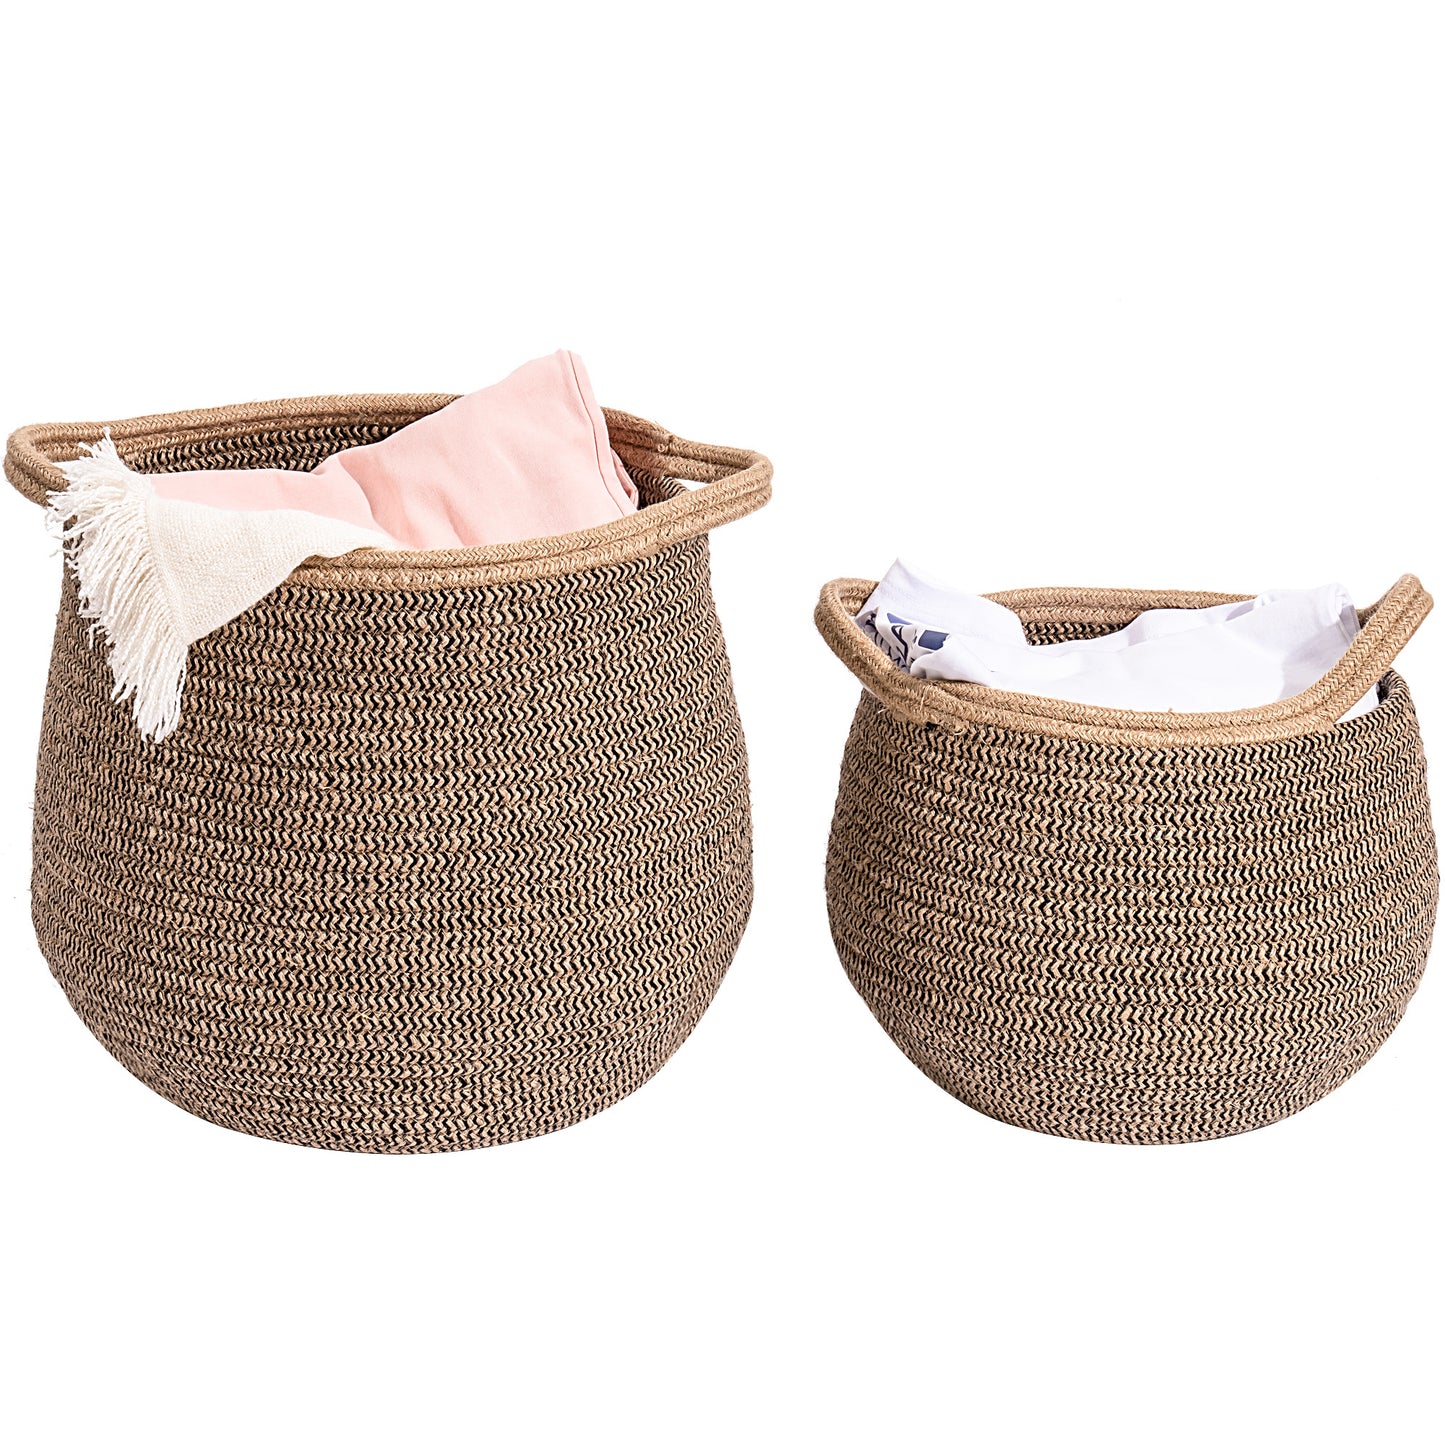 Cotton Linen Laundry Basket 2 pc. Set